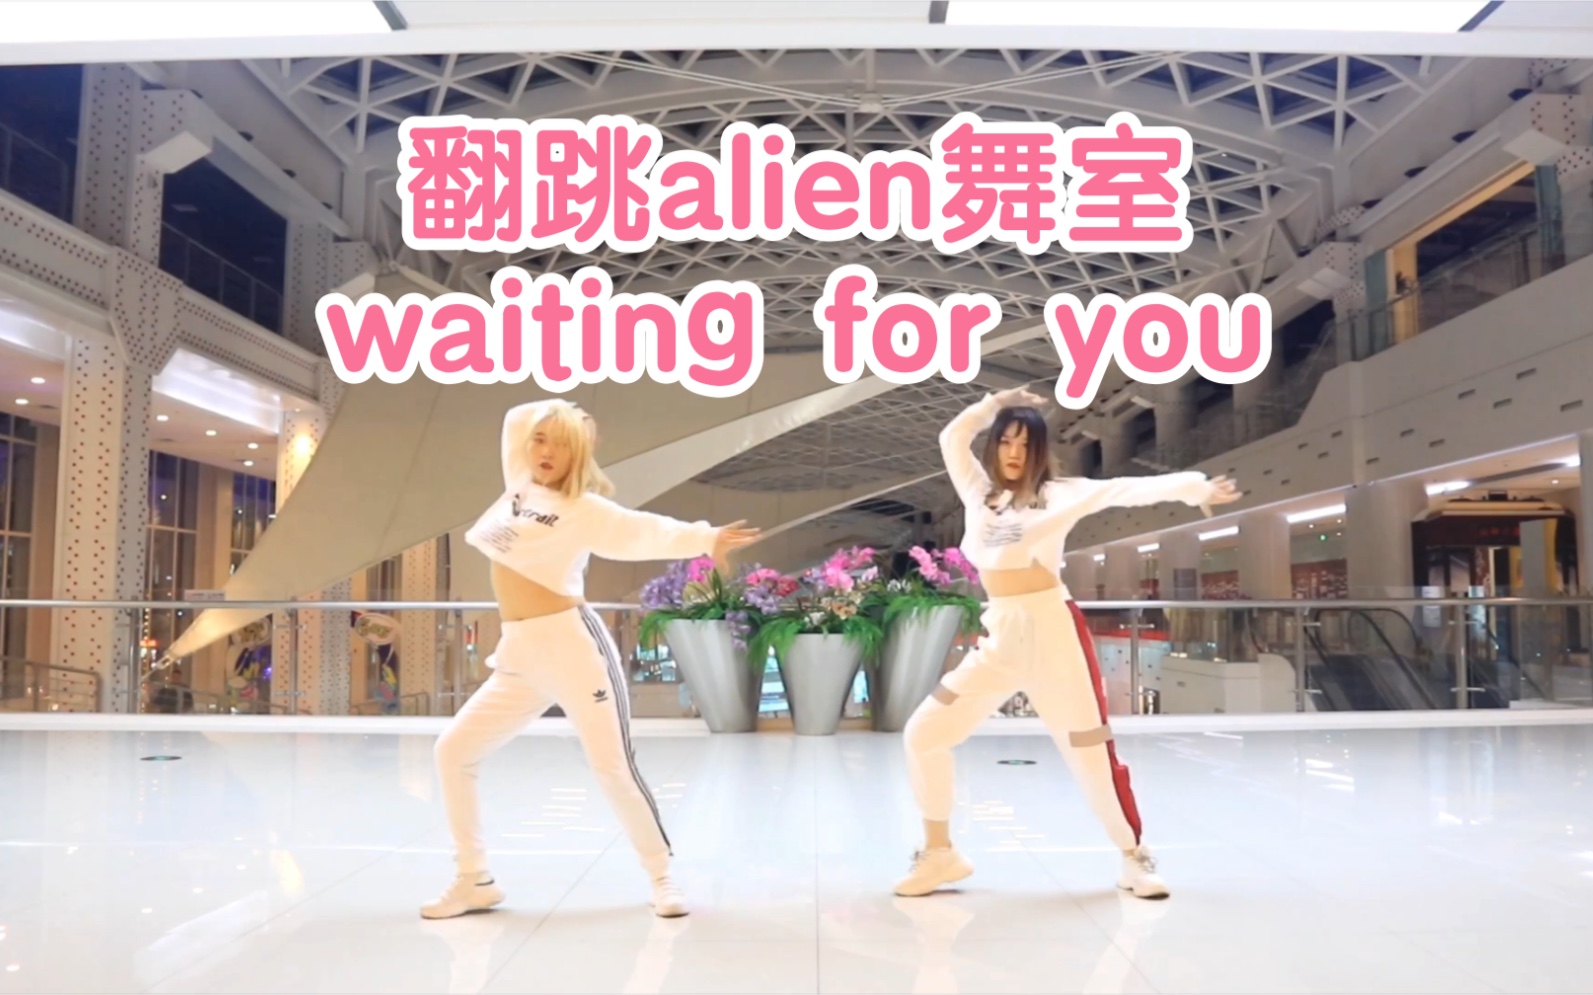 翻跳alien舞室- waiting for you